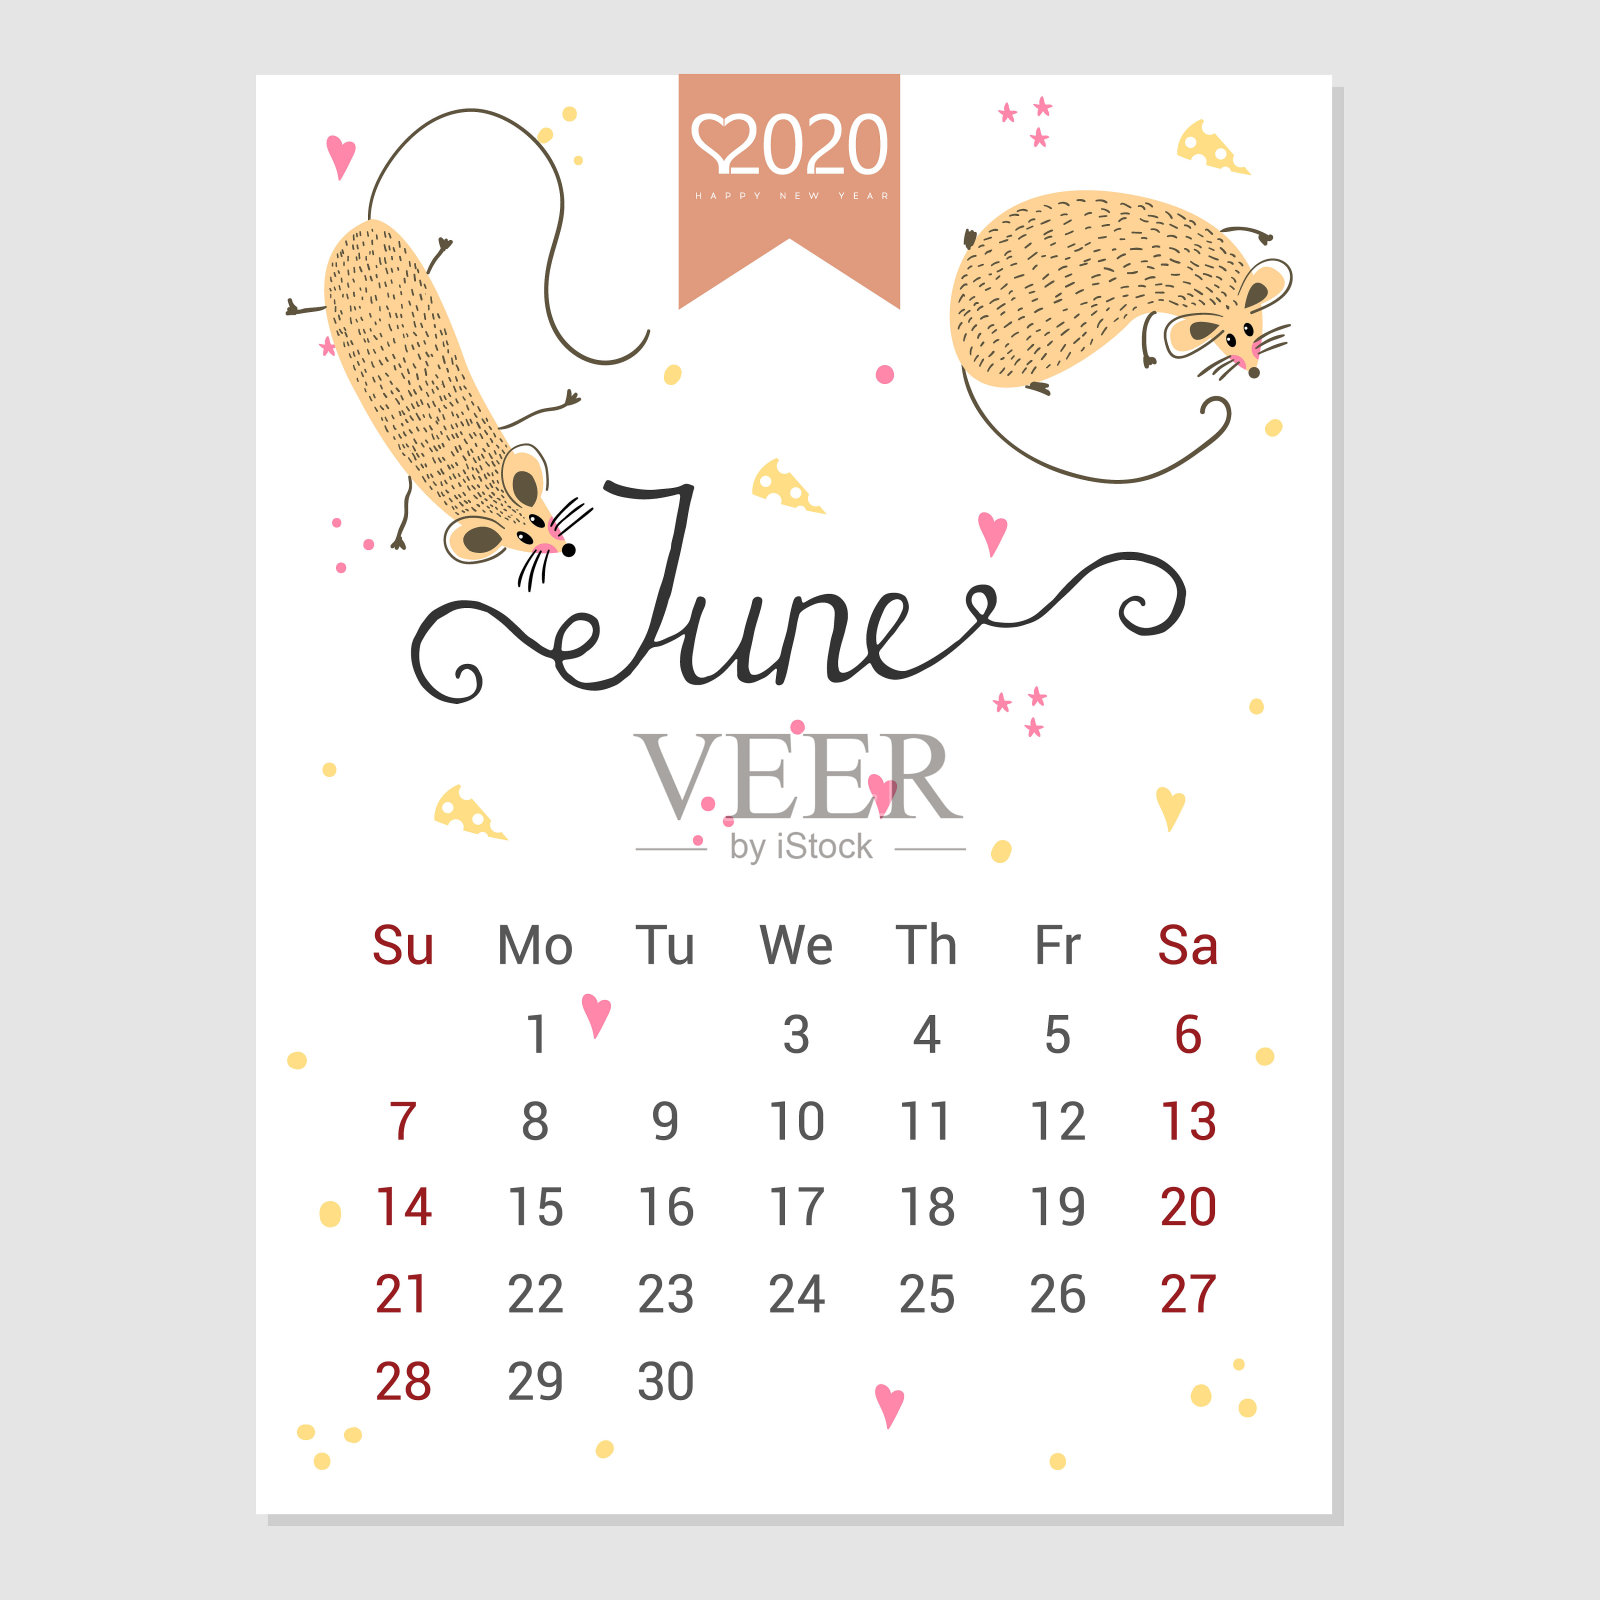 2020年6月的日历。可爱的月历与老鼠。手绘风格字符。鼠年。设计模板素材